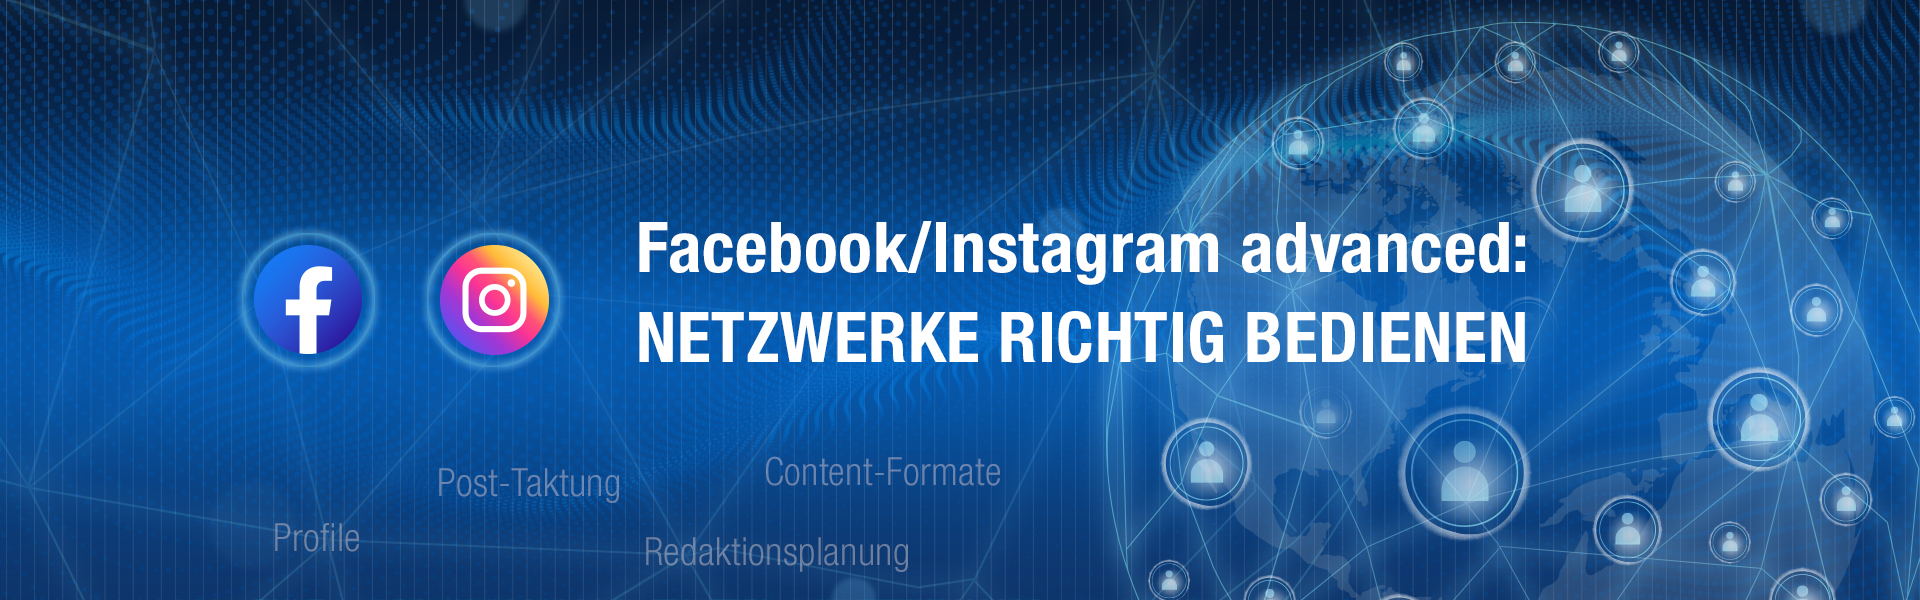 Sikkens Akademie - 23.2 SOCIAL MEDIA: Facebook/Instagram - Aufbau-Webinar